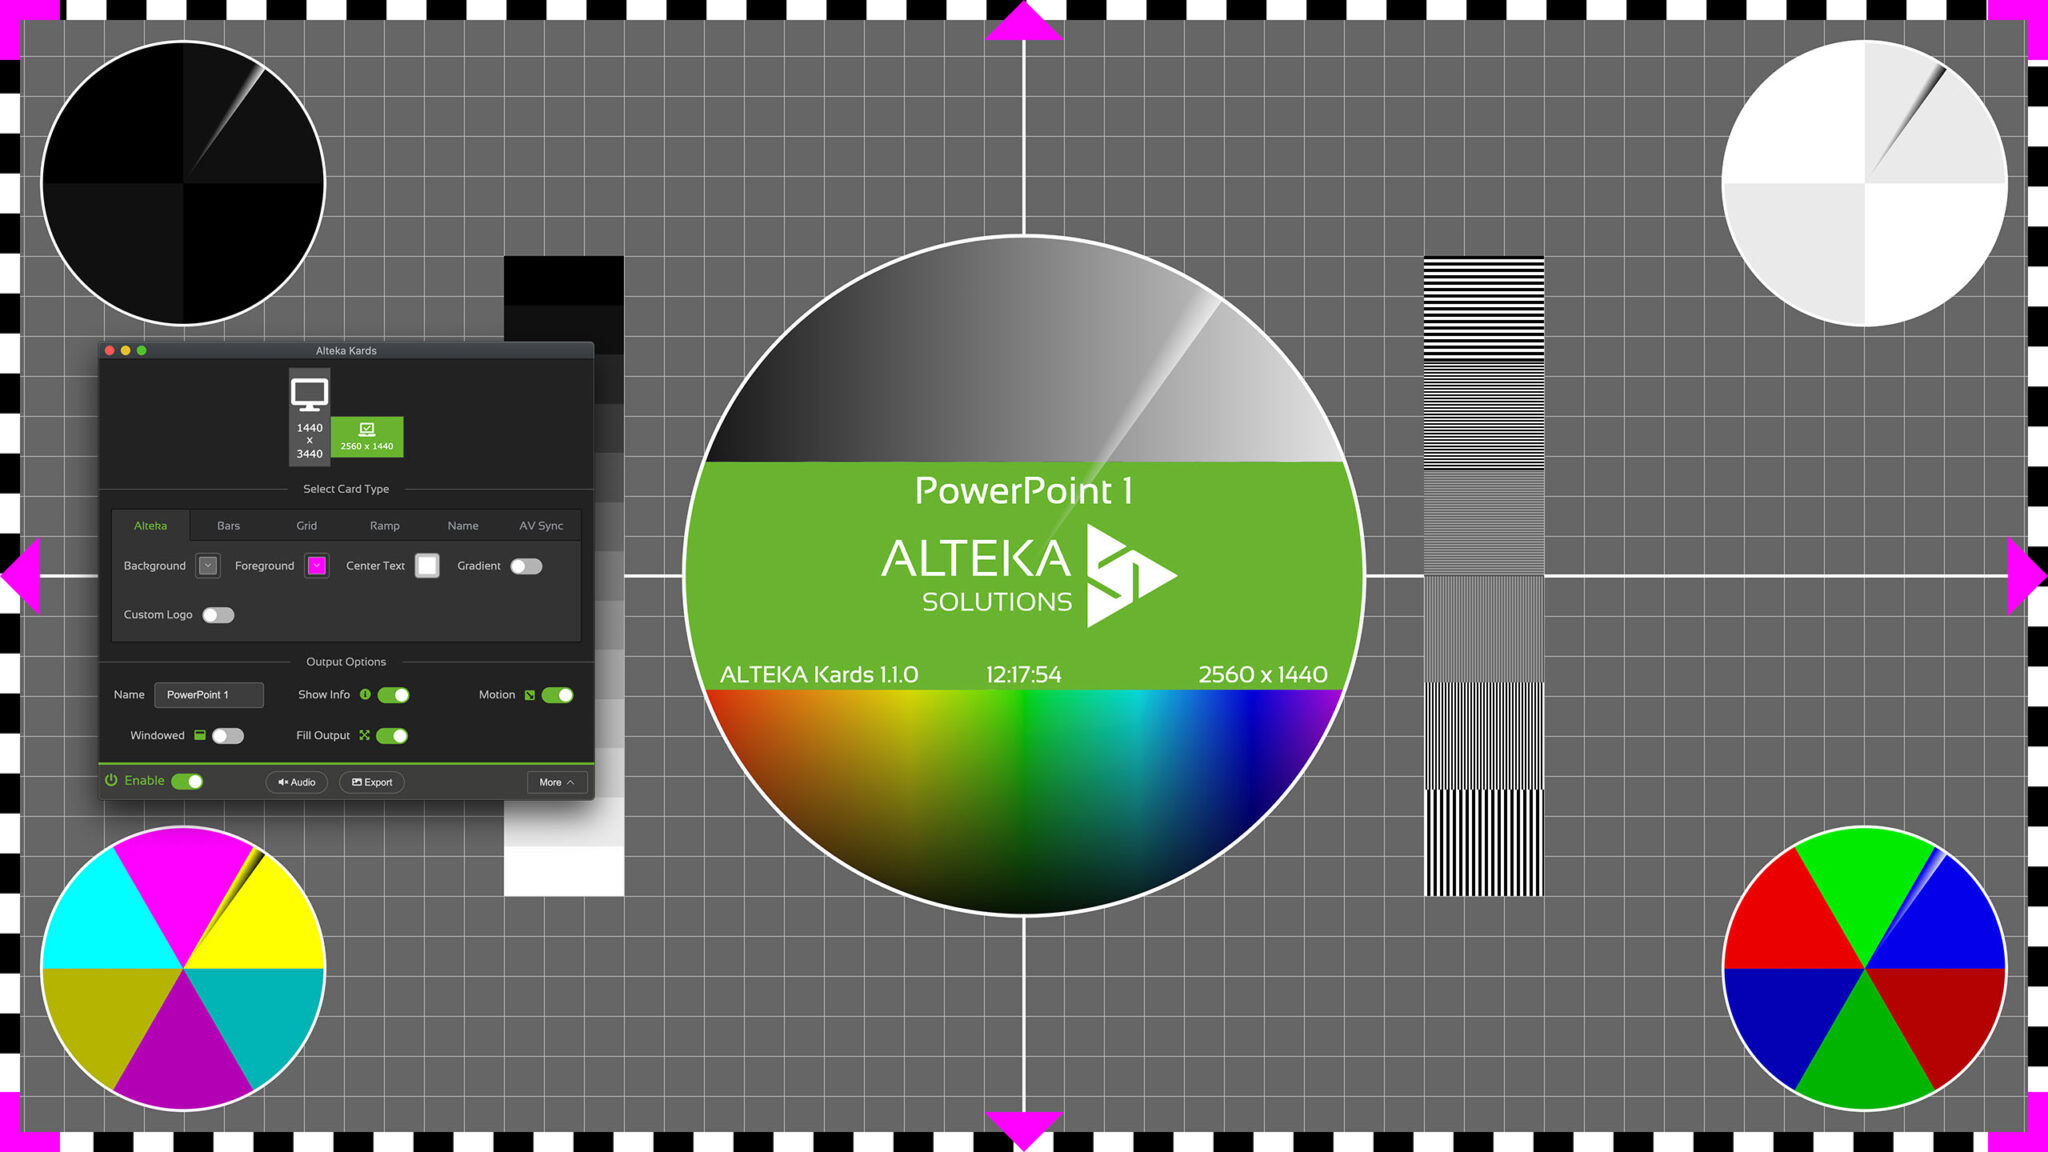 Alteka Solutions Kards